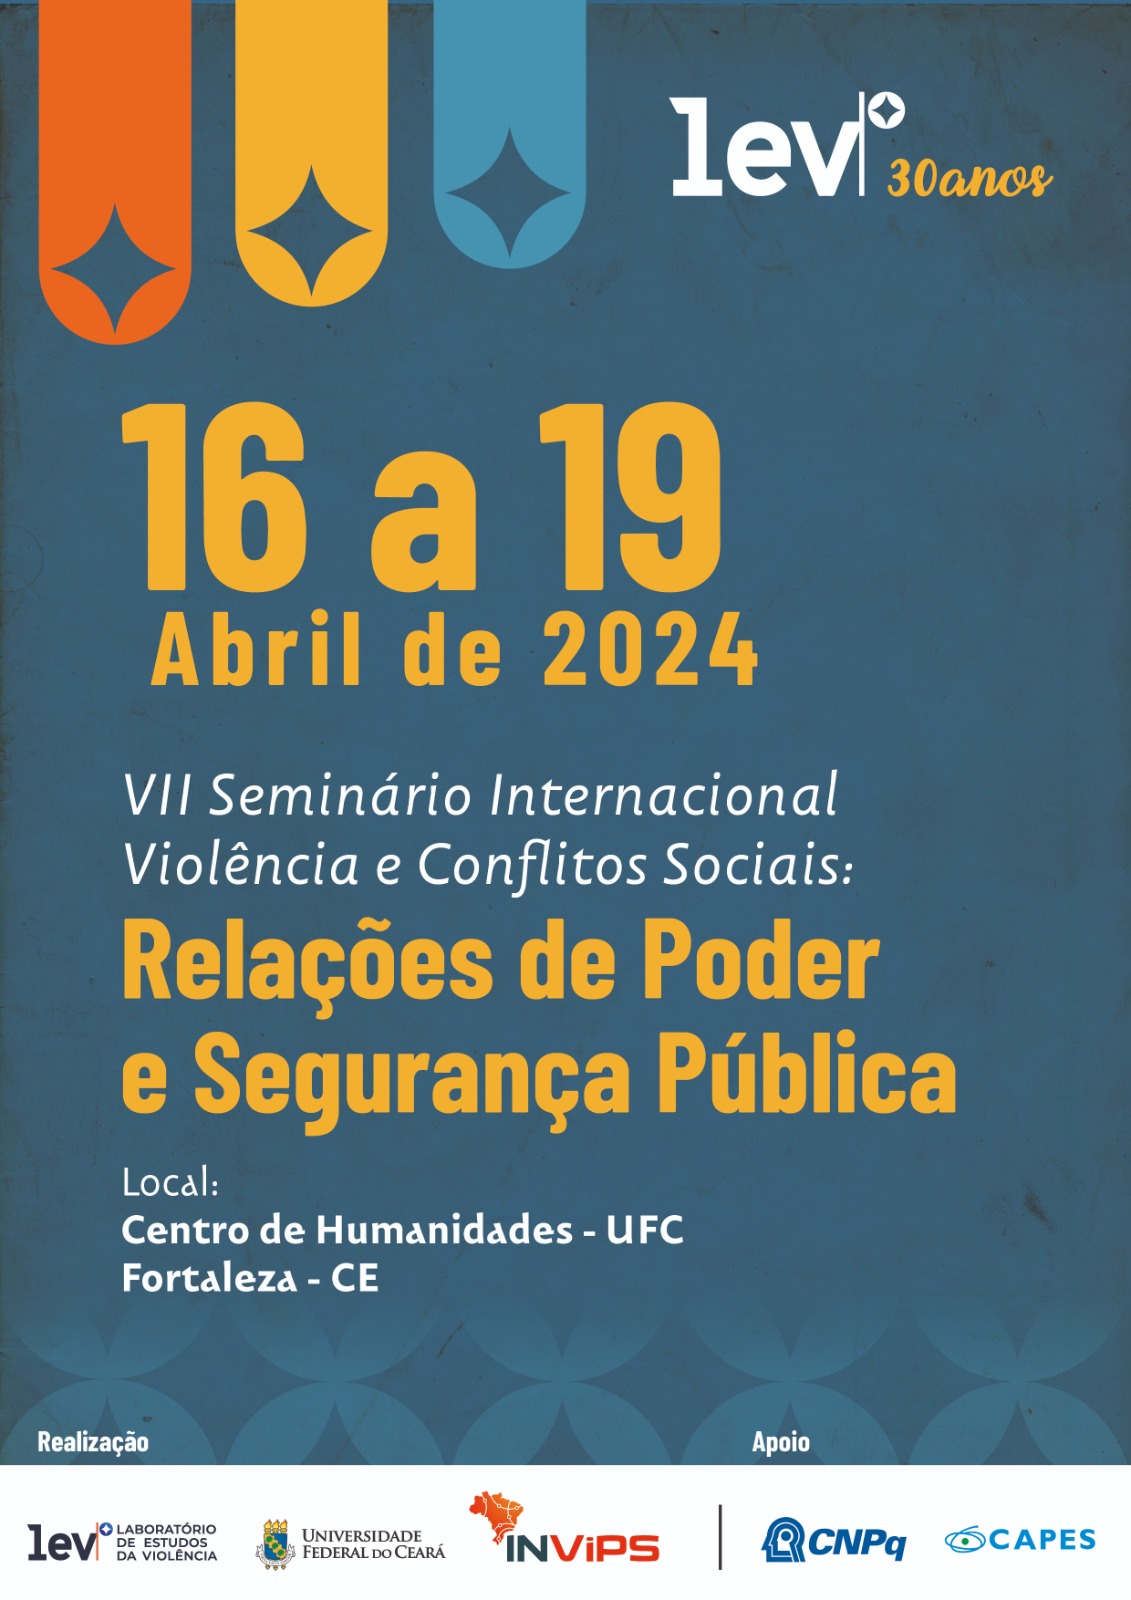 VII Seminário Internacional Violência e Conflitos Sociais: Relações de Poder e Segurança Pública.